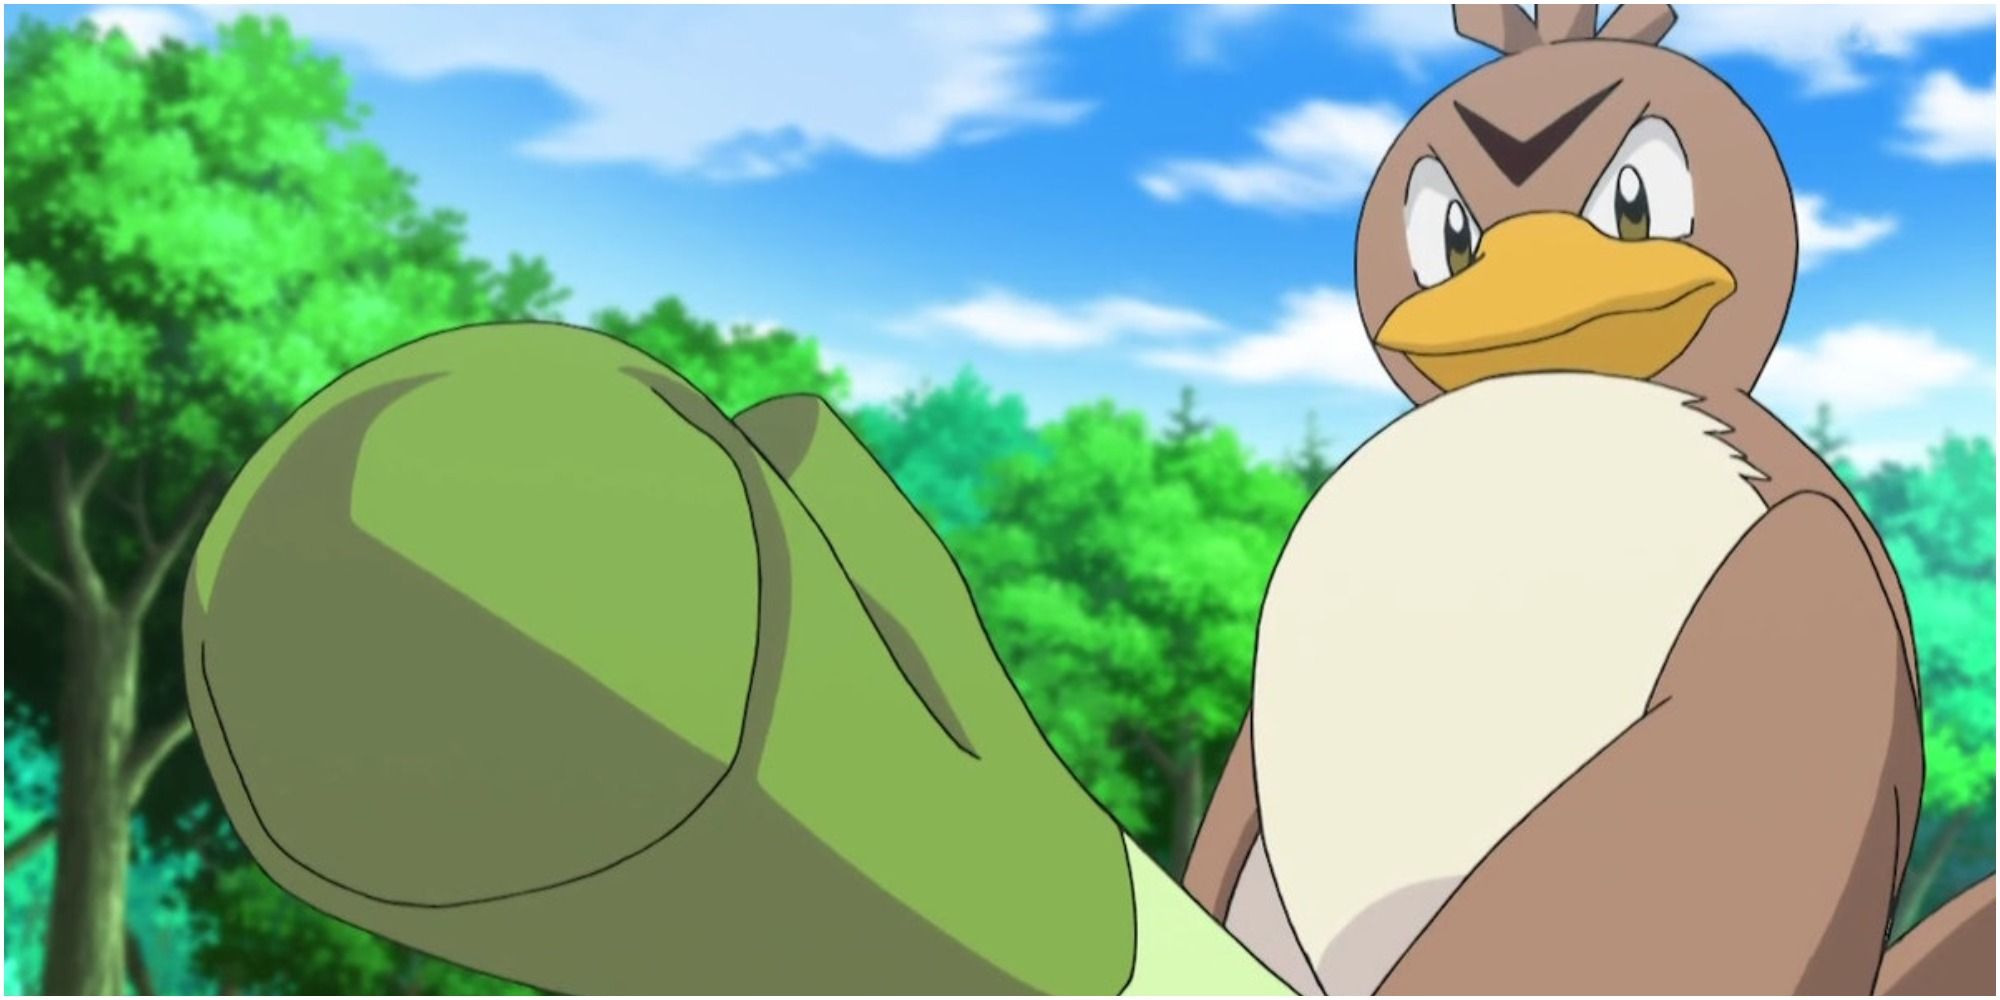 A Farfetch'd wielding a leek in the Pokemon anime